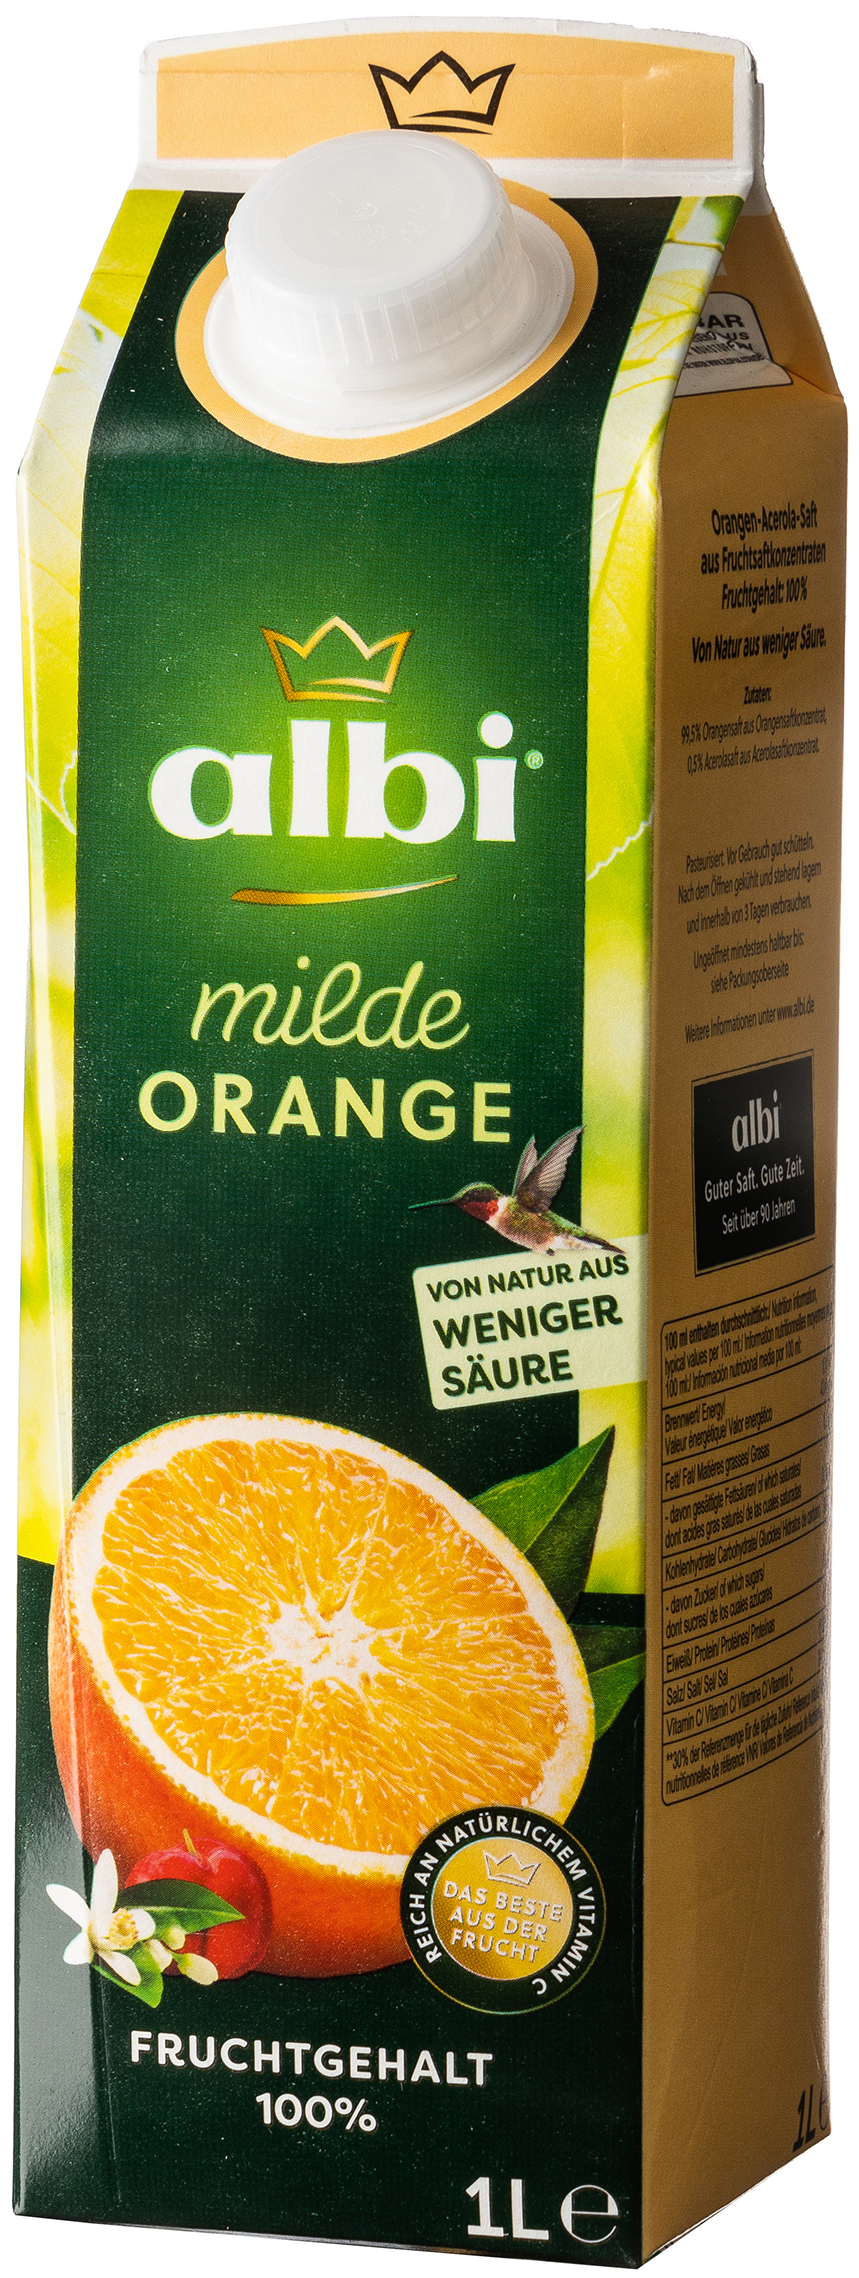 albi milde Orange 1,0L